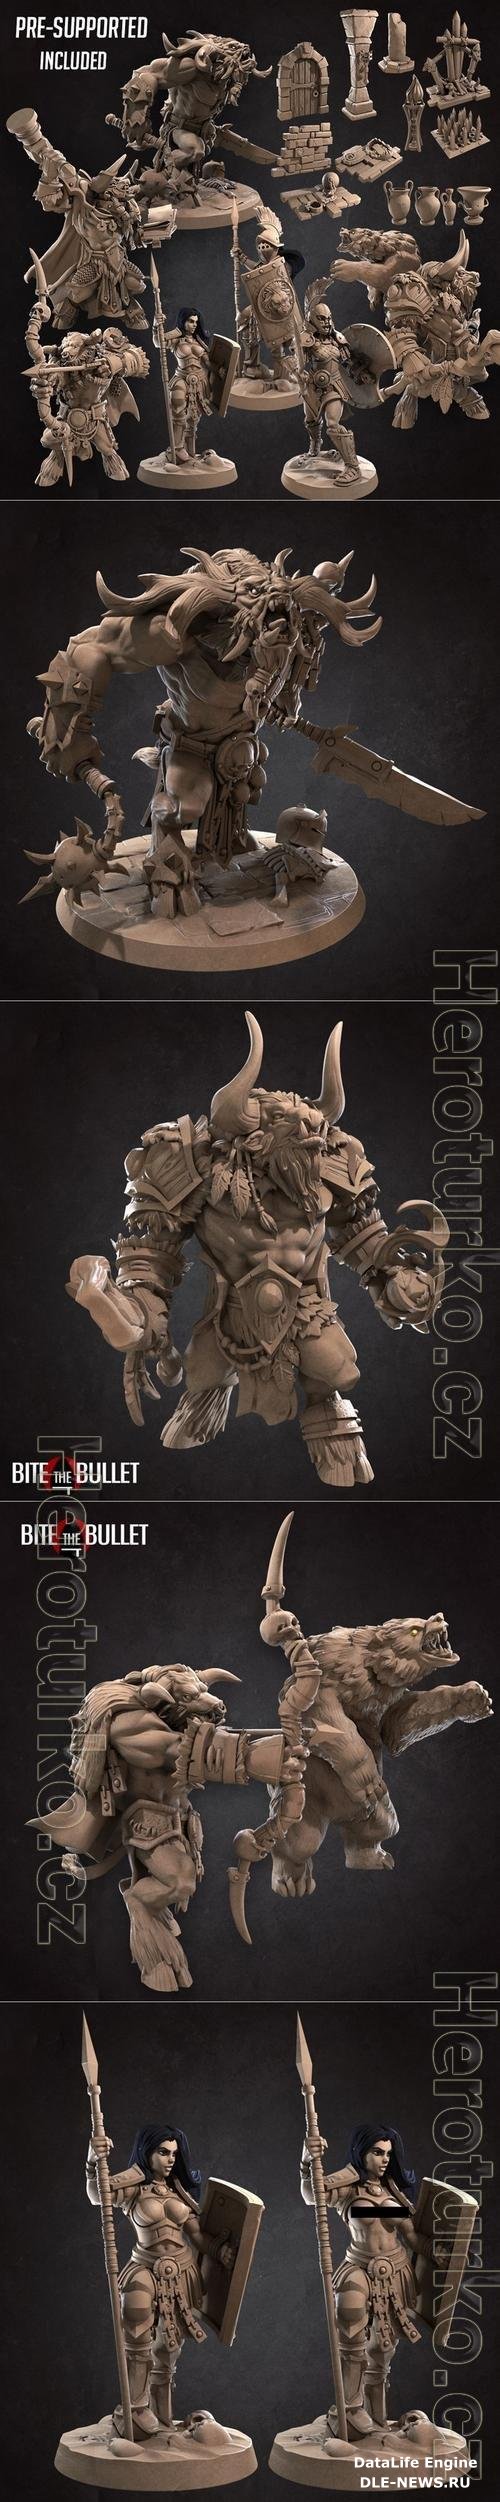 Bite the Bullet - Minotaurs January 2021 3D Print